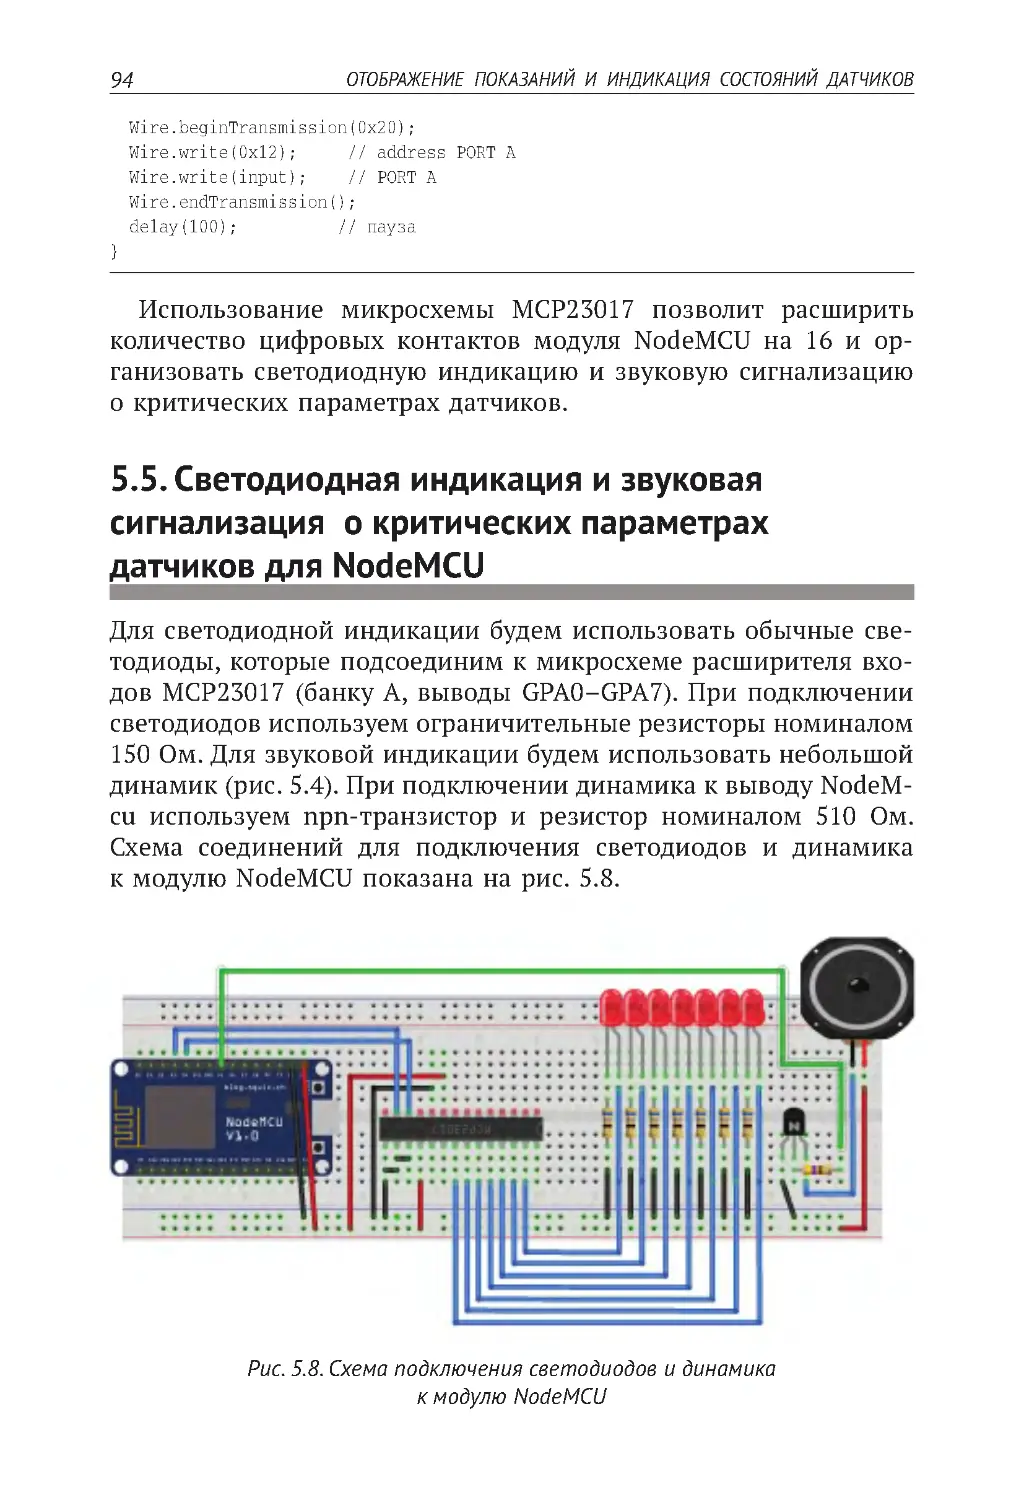 5.5. Светодиодная индикация и звуковая сигнализация  о критических параметрах датчиков для NodeMCU